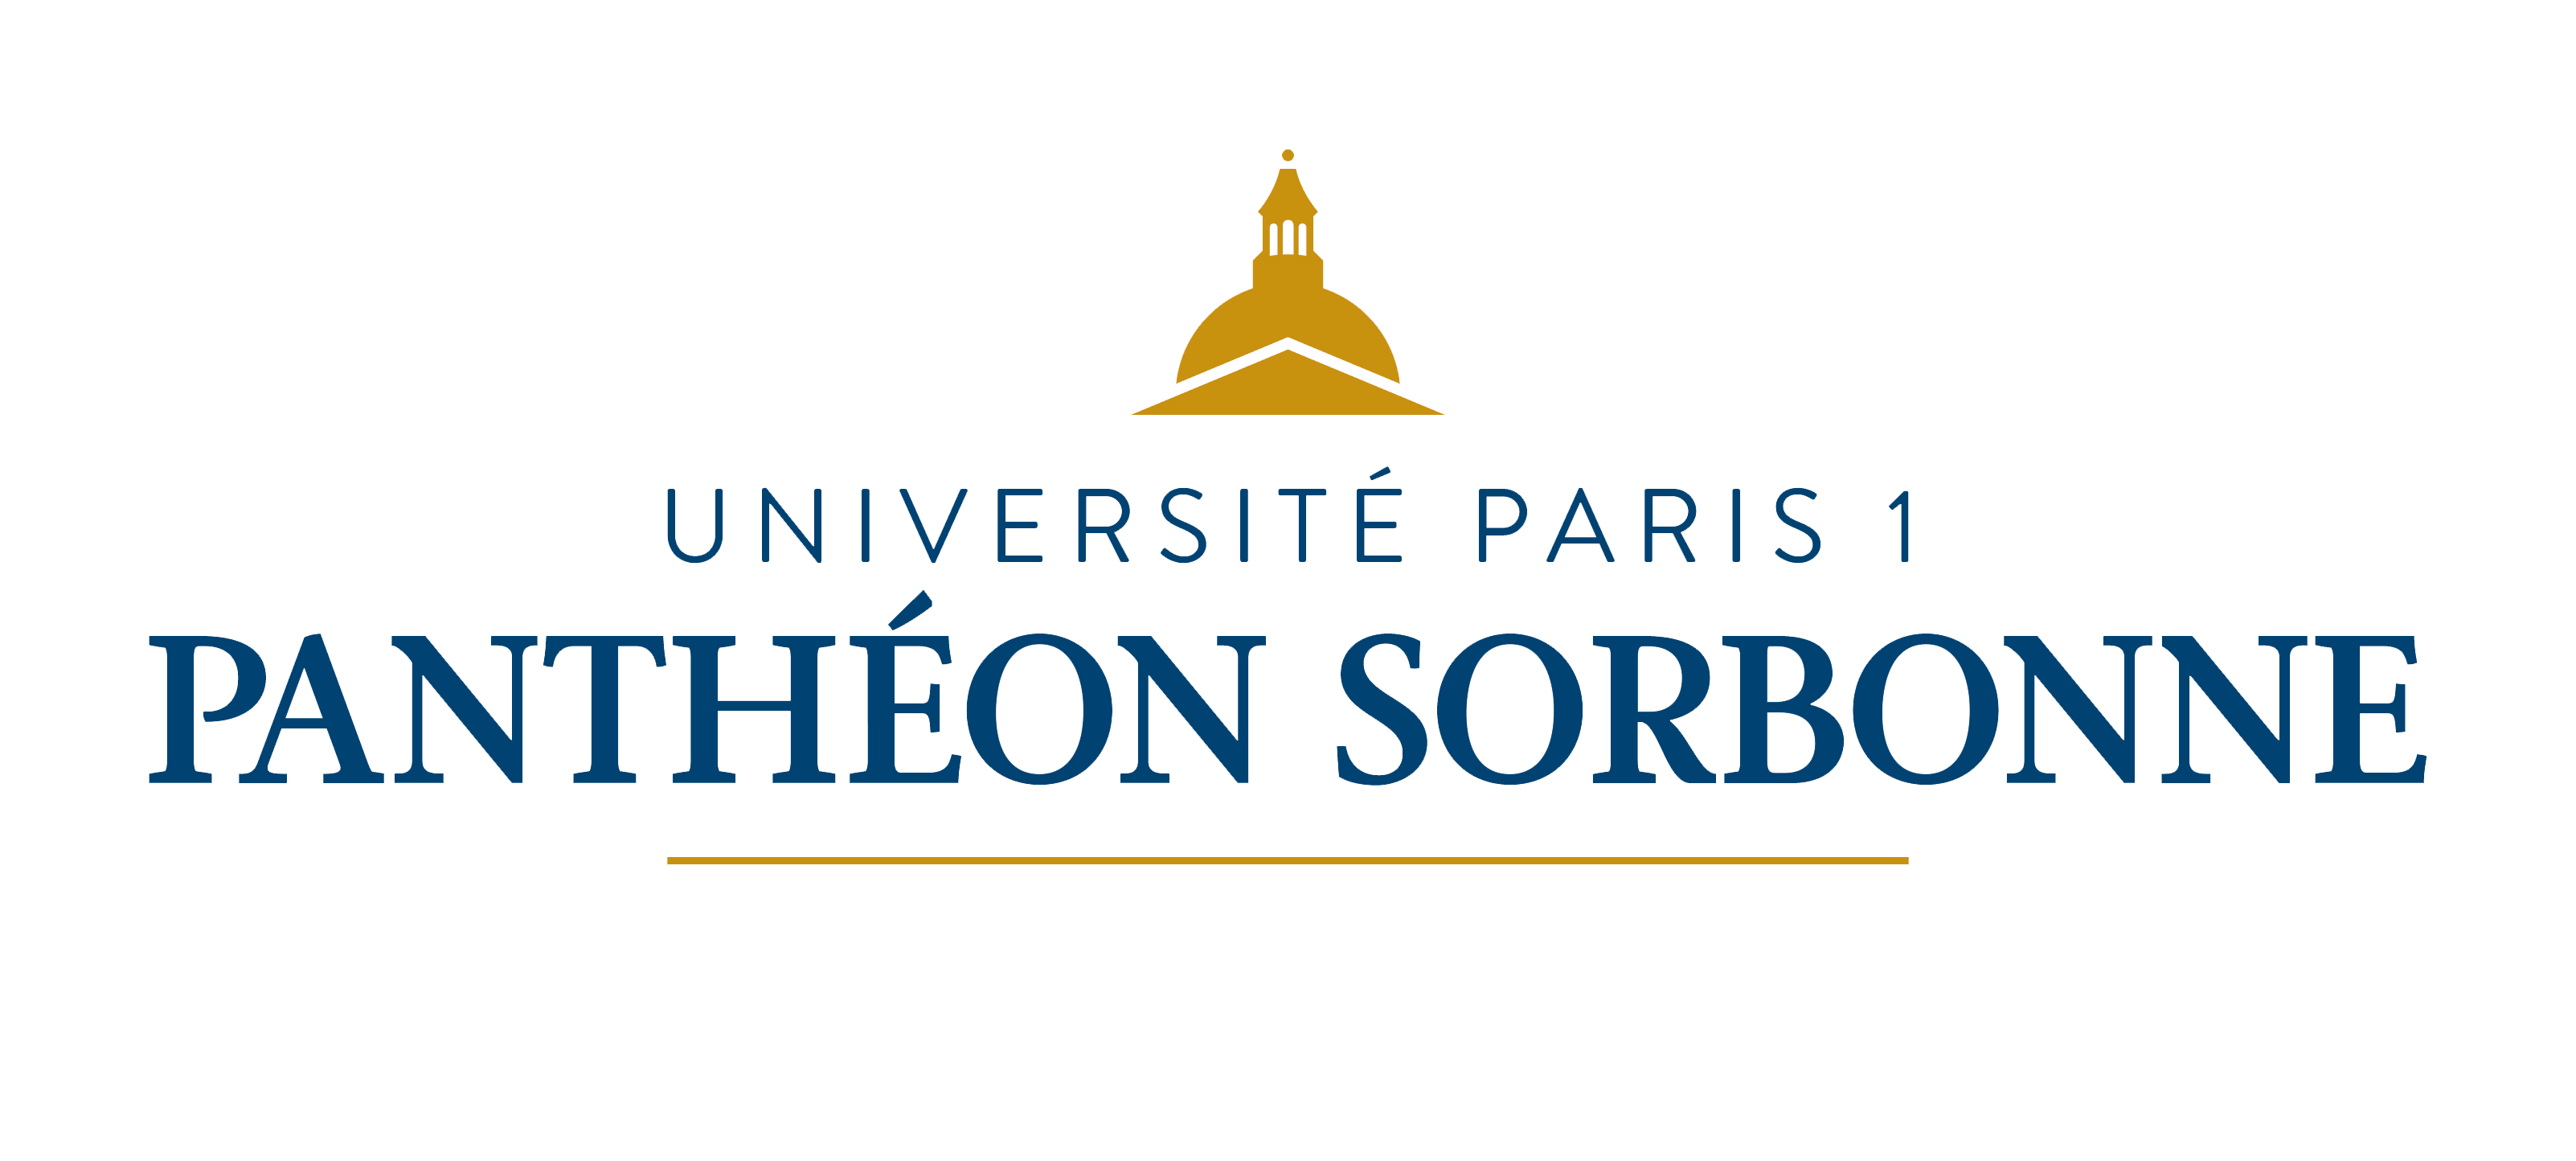 Paris 1 Panthéon-Sorbonne